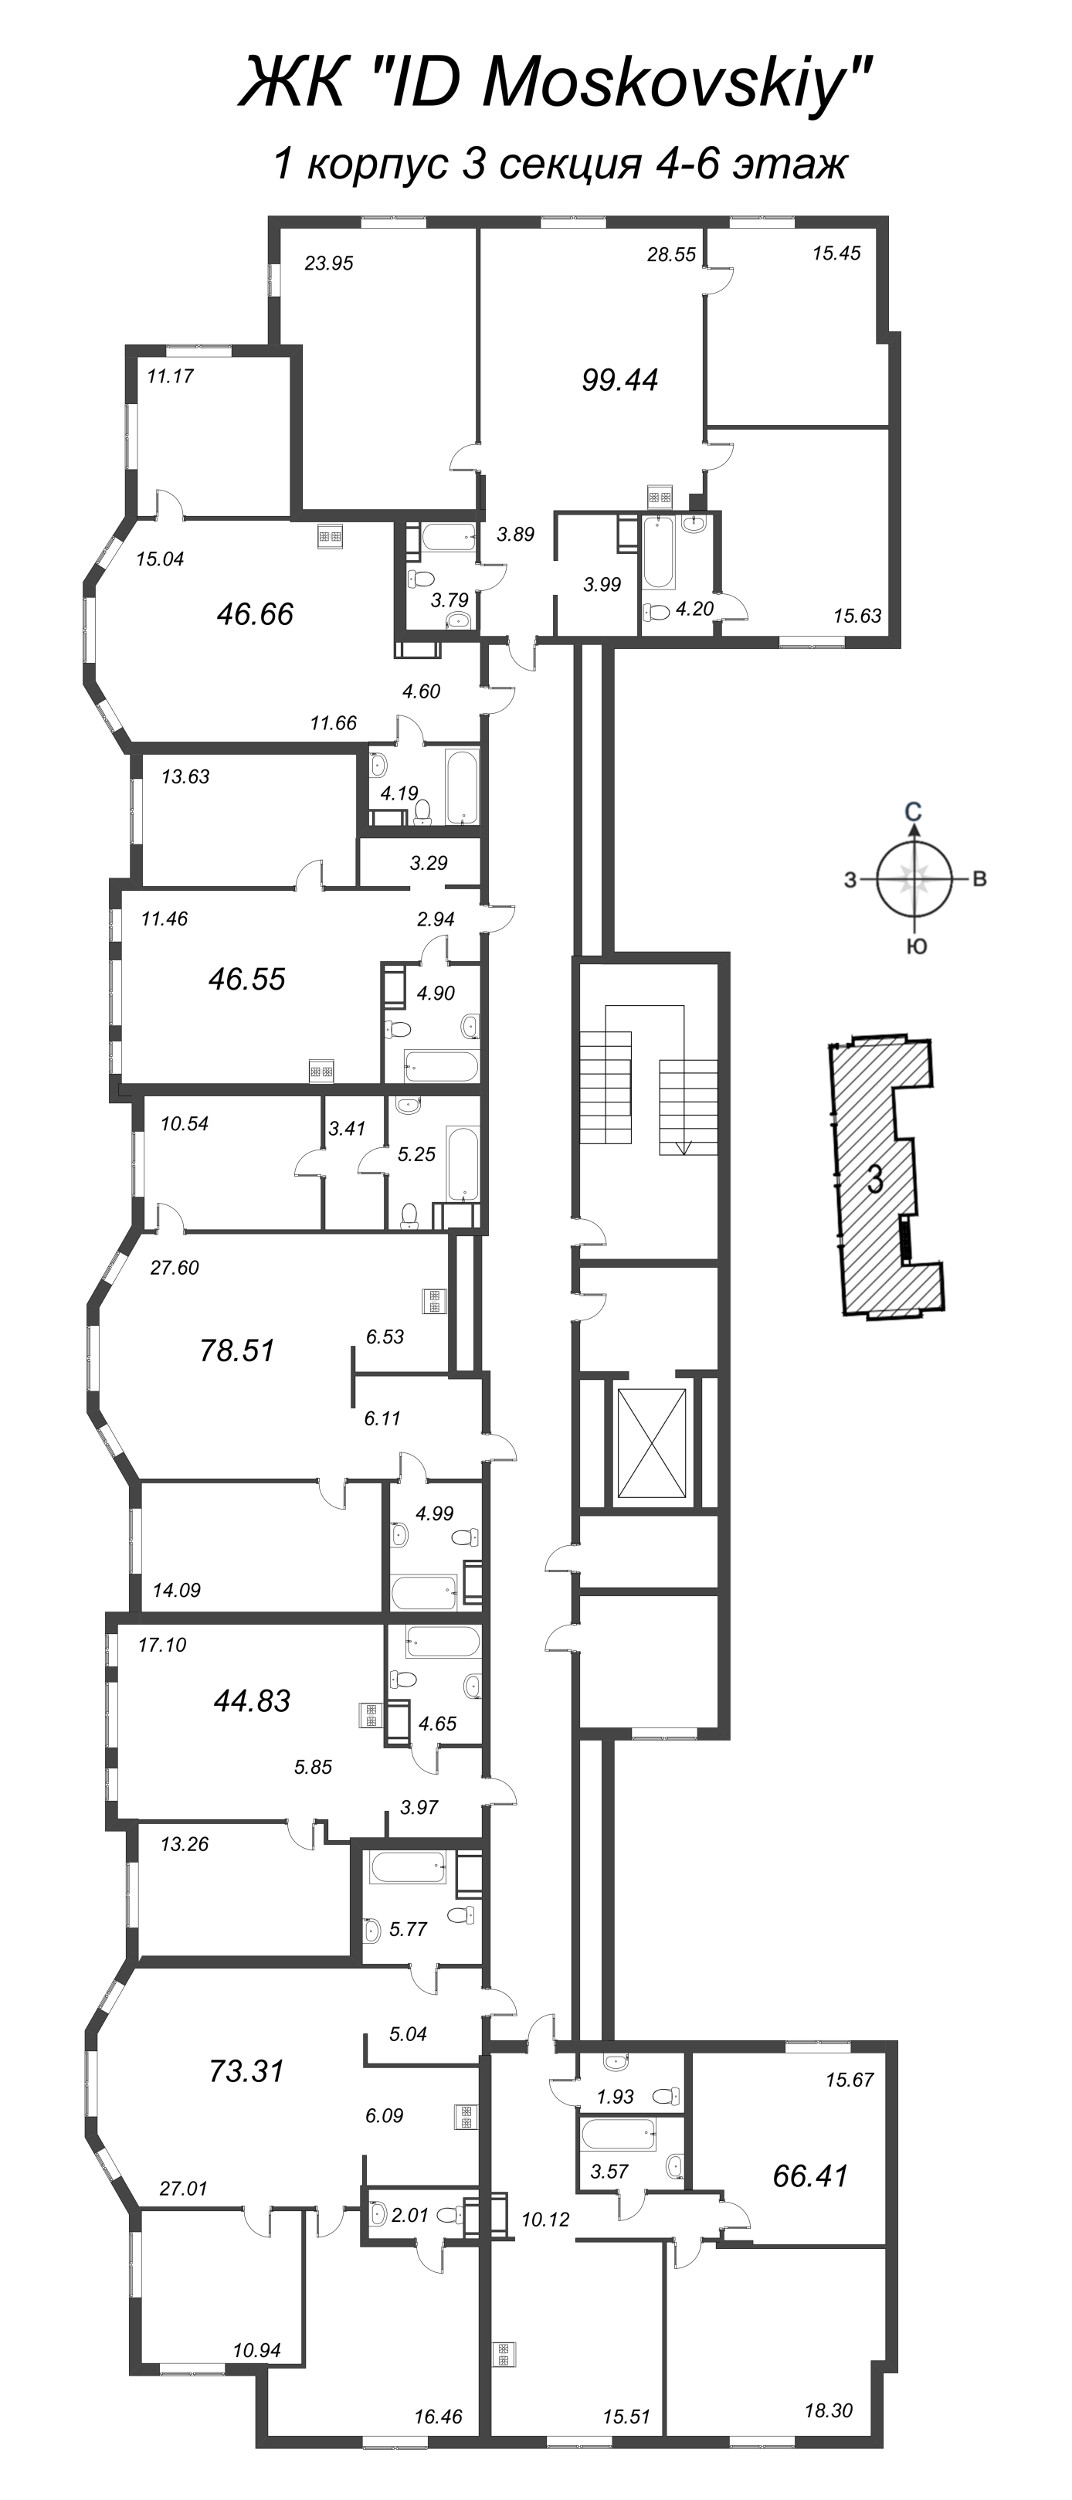 4-комнатная (Евро) квартира, 99.44 м² в ЖК "ID Moskovskiy" - планировка этажа